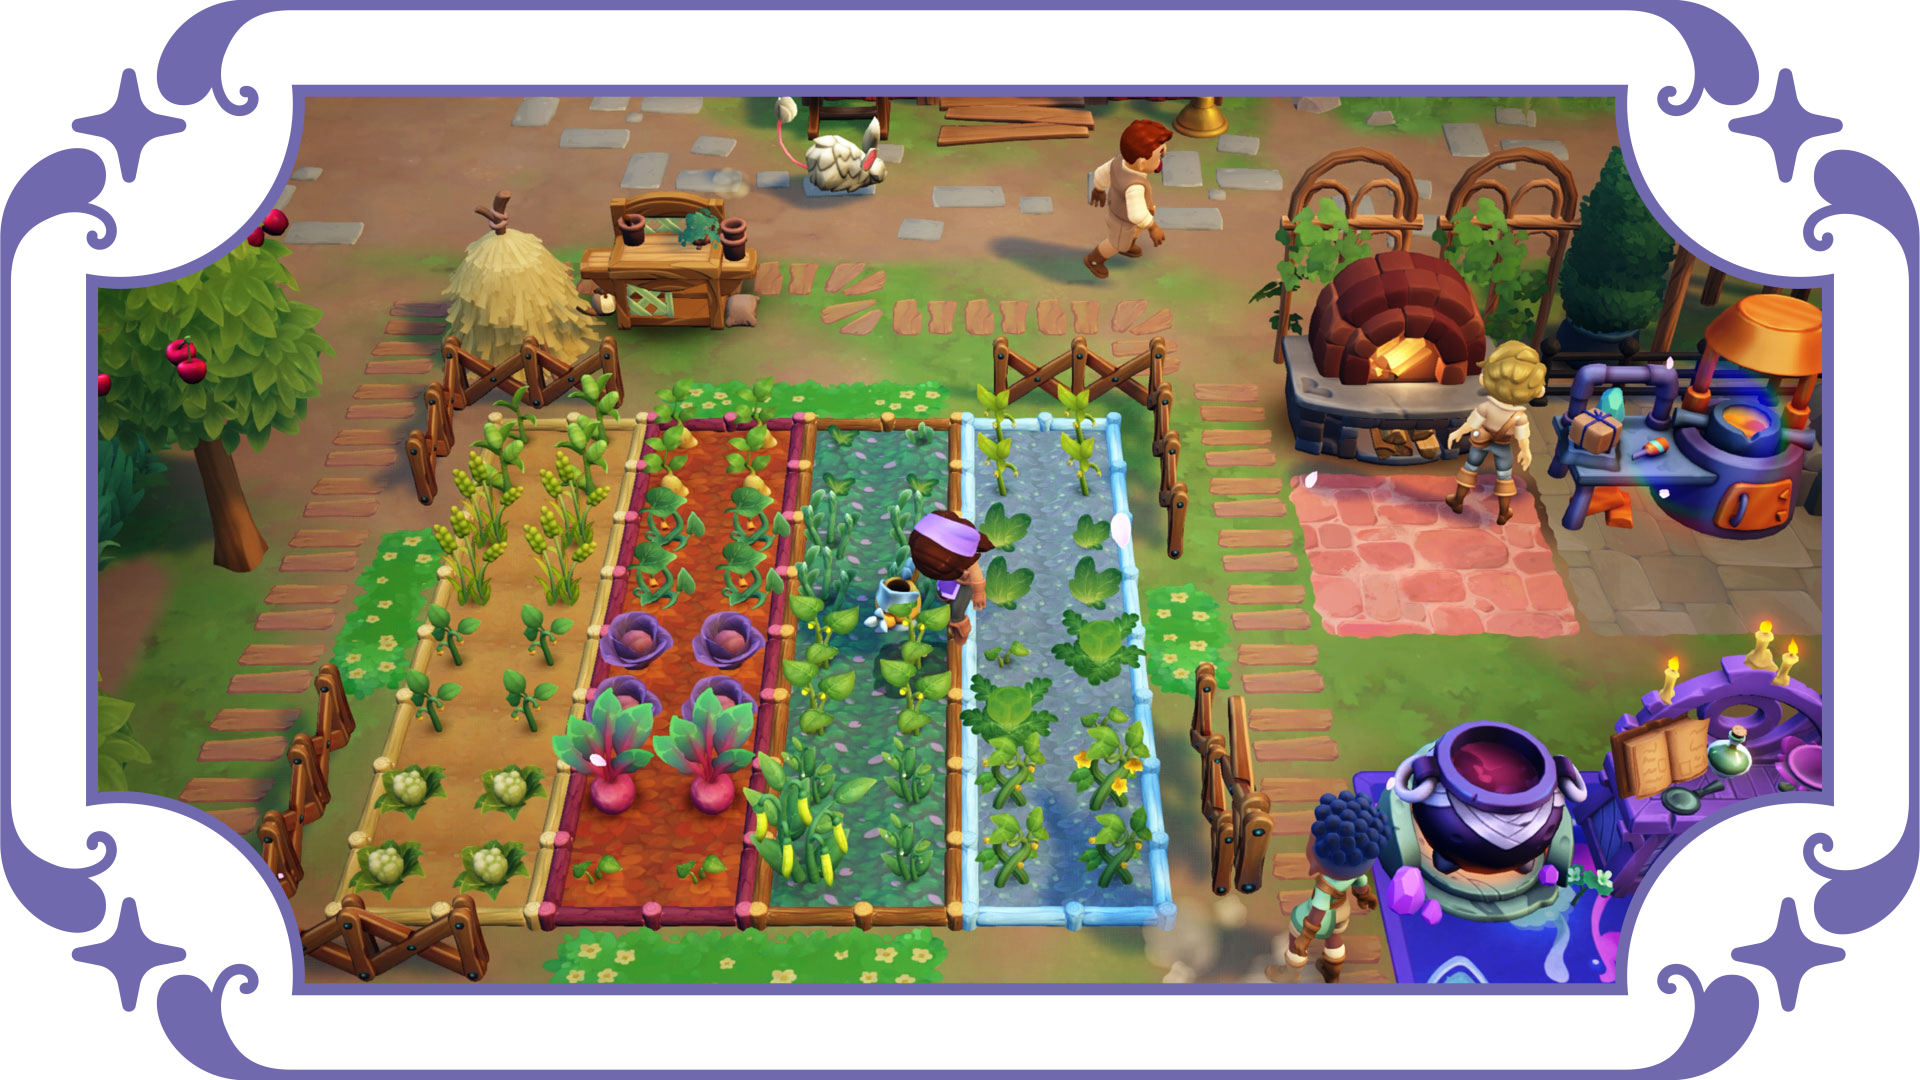 Fae Farm - Nintendo